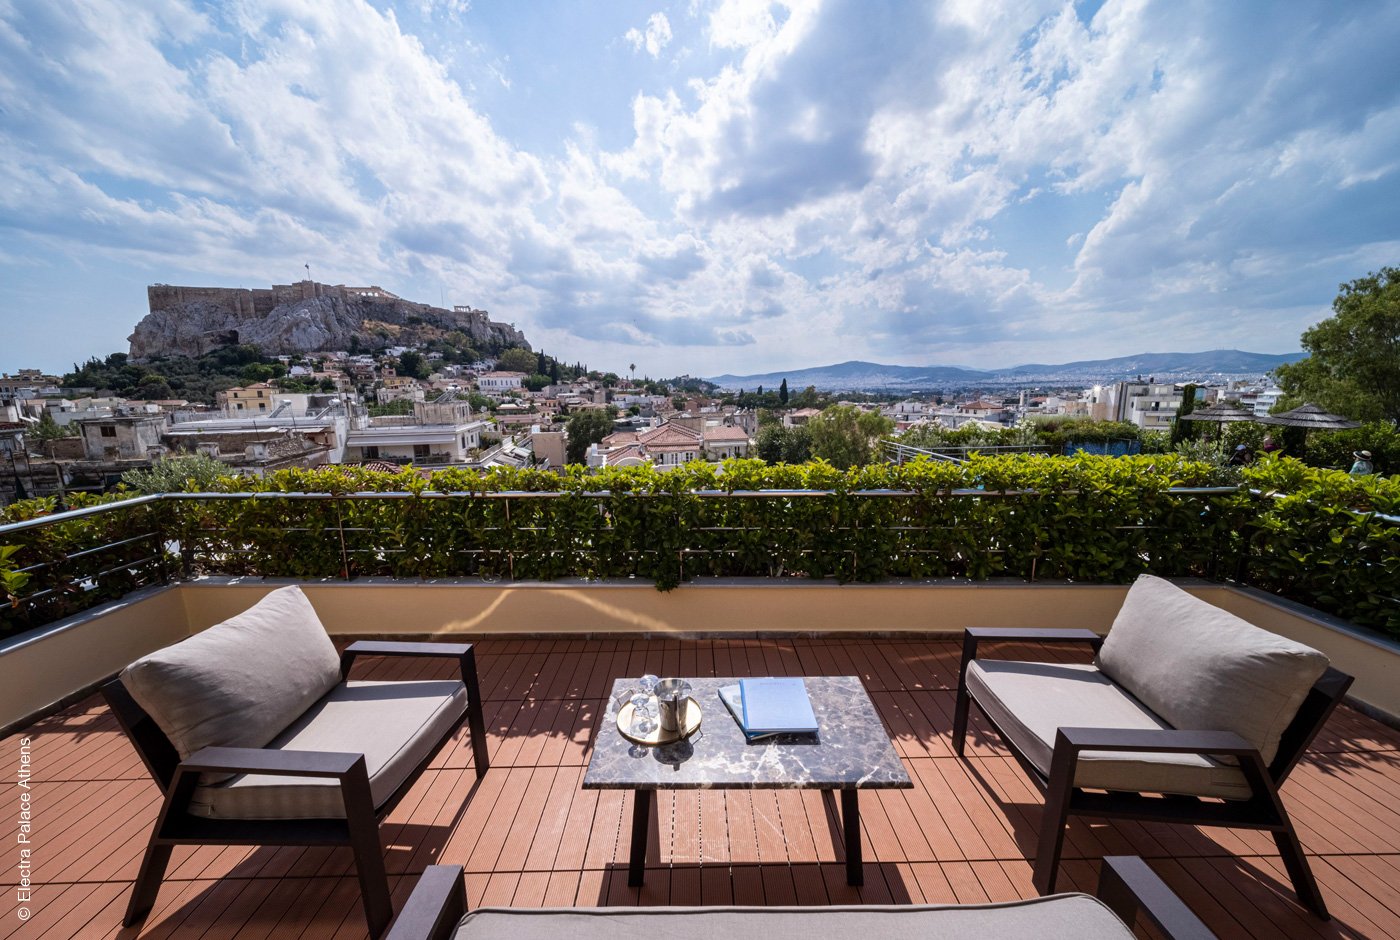 Electra Palace Hotel Athens | Athen | Suite Acropolis Balcony | Archiv | luxuszeit.com